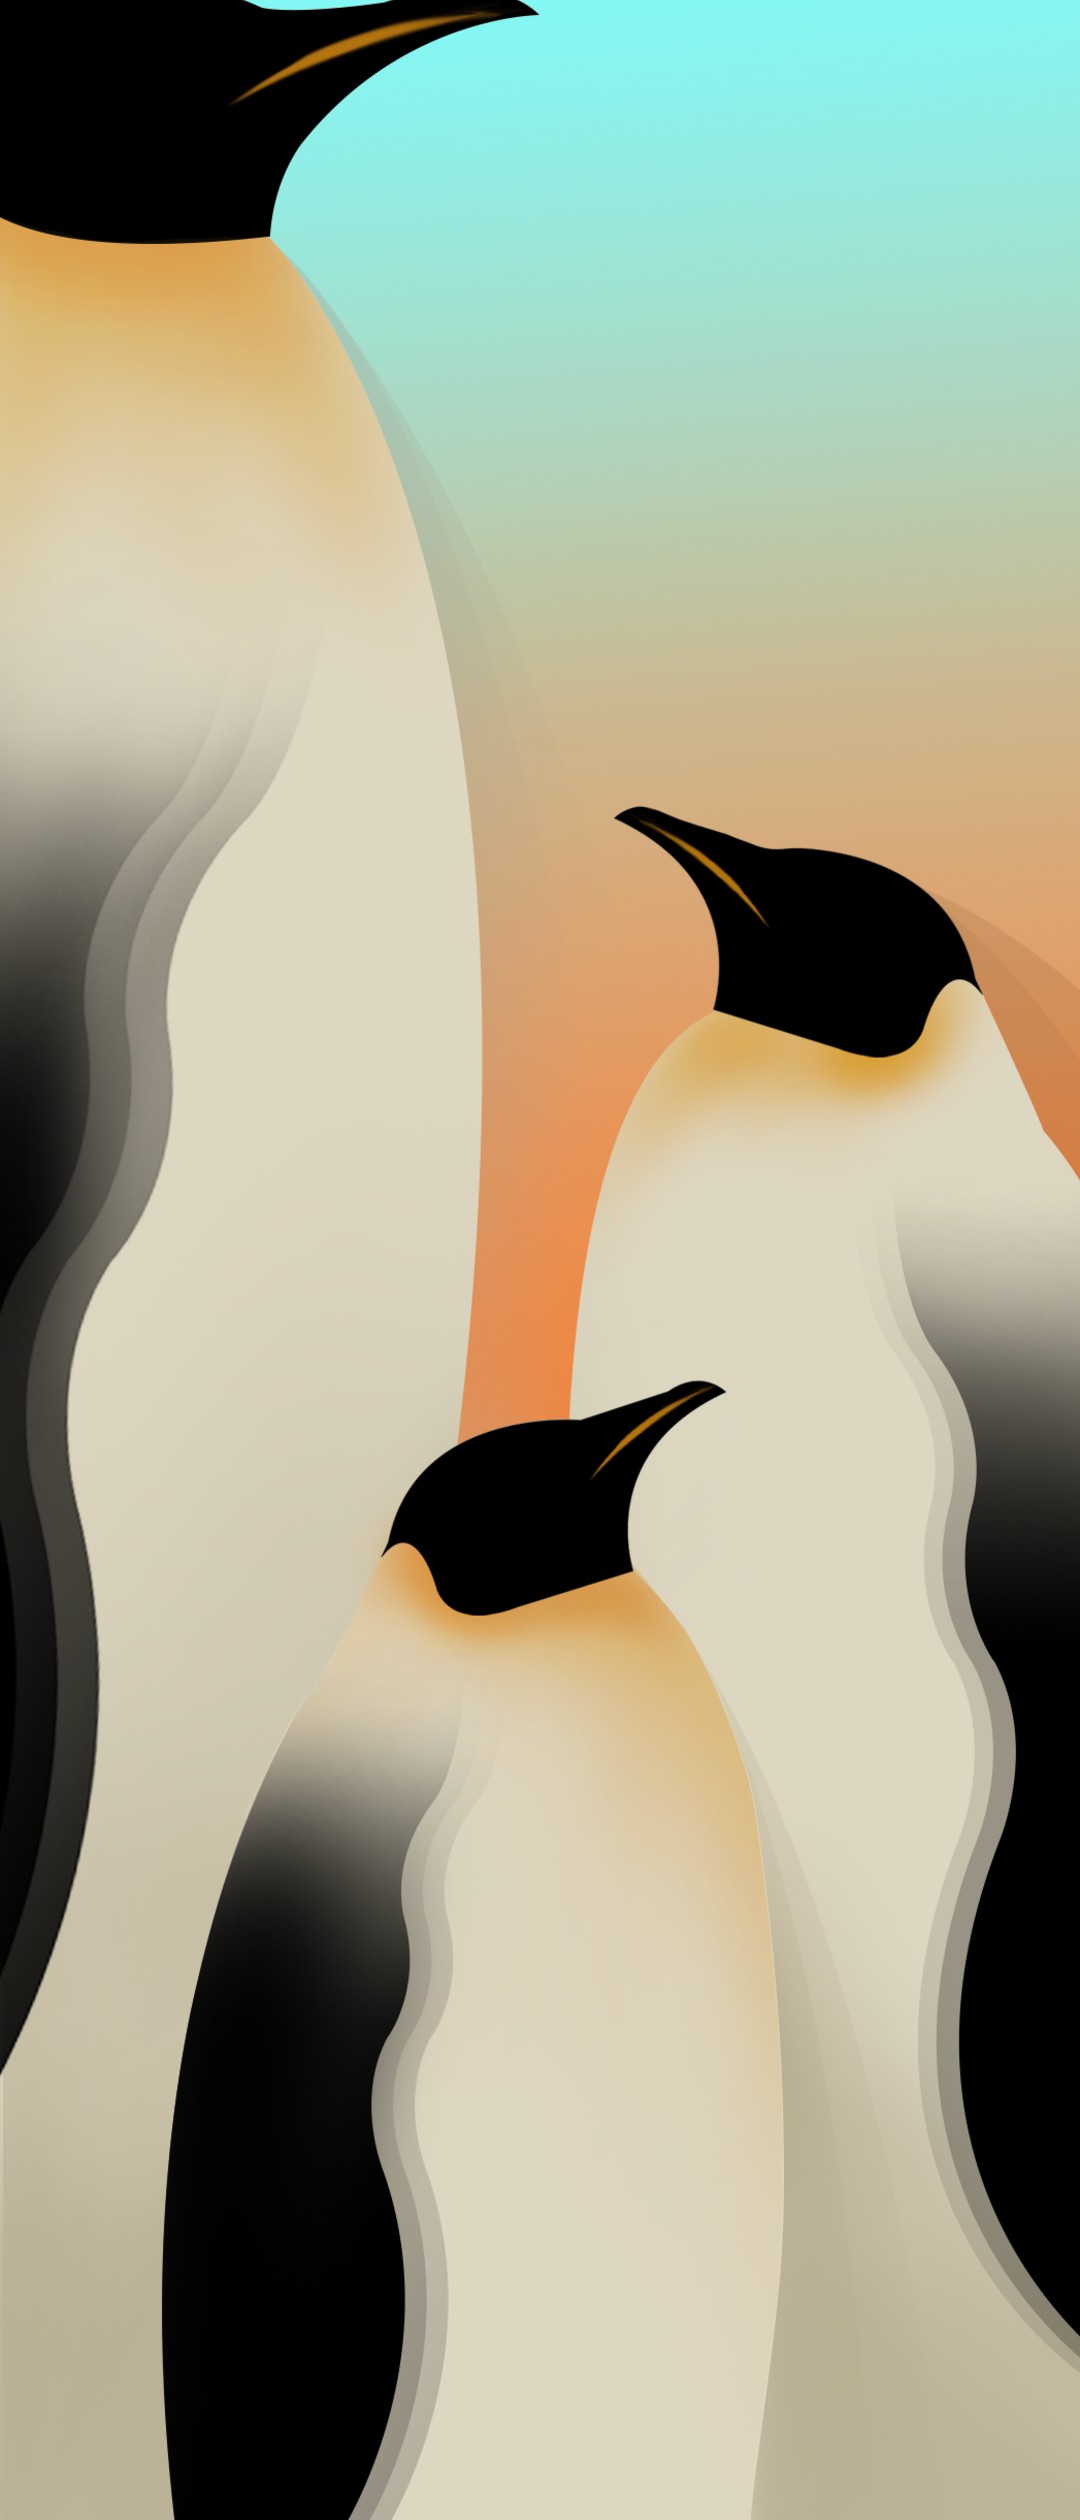 完了しました 壁紙 イラスト かわいい ペンギン かわいい ペンギン イラスト 壁紙